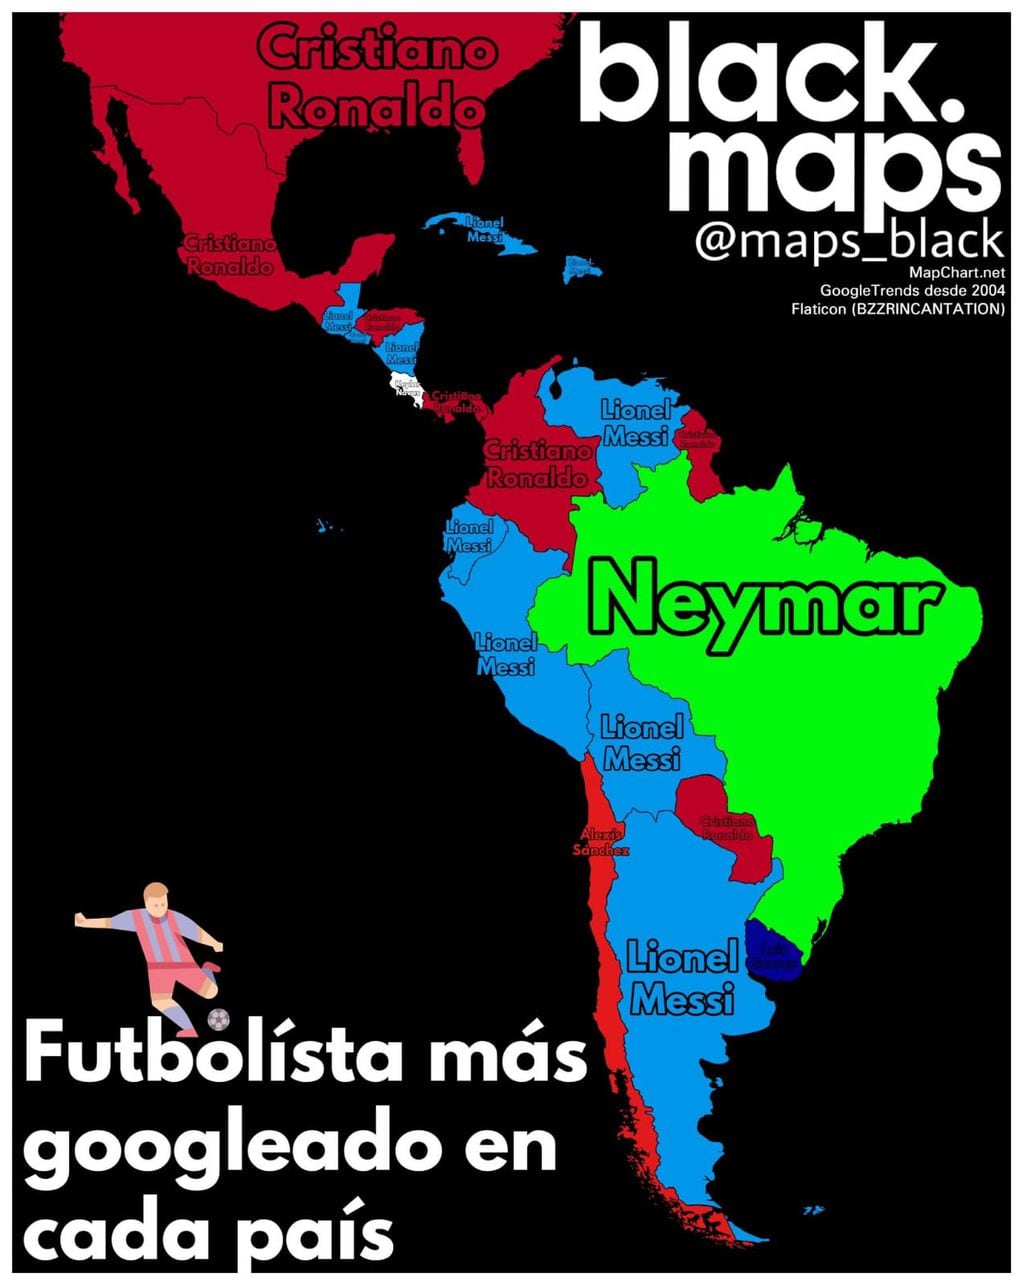 Los futbolistas más googleado en cada país de América.